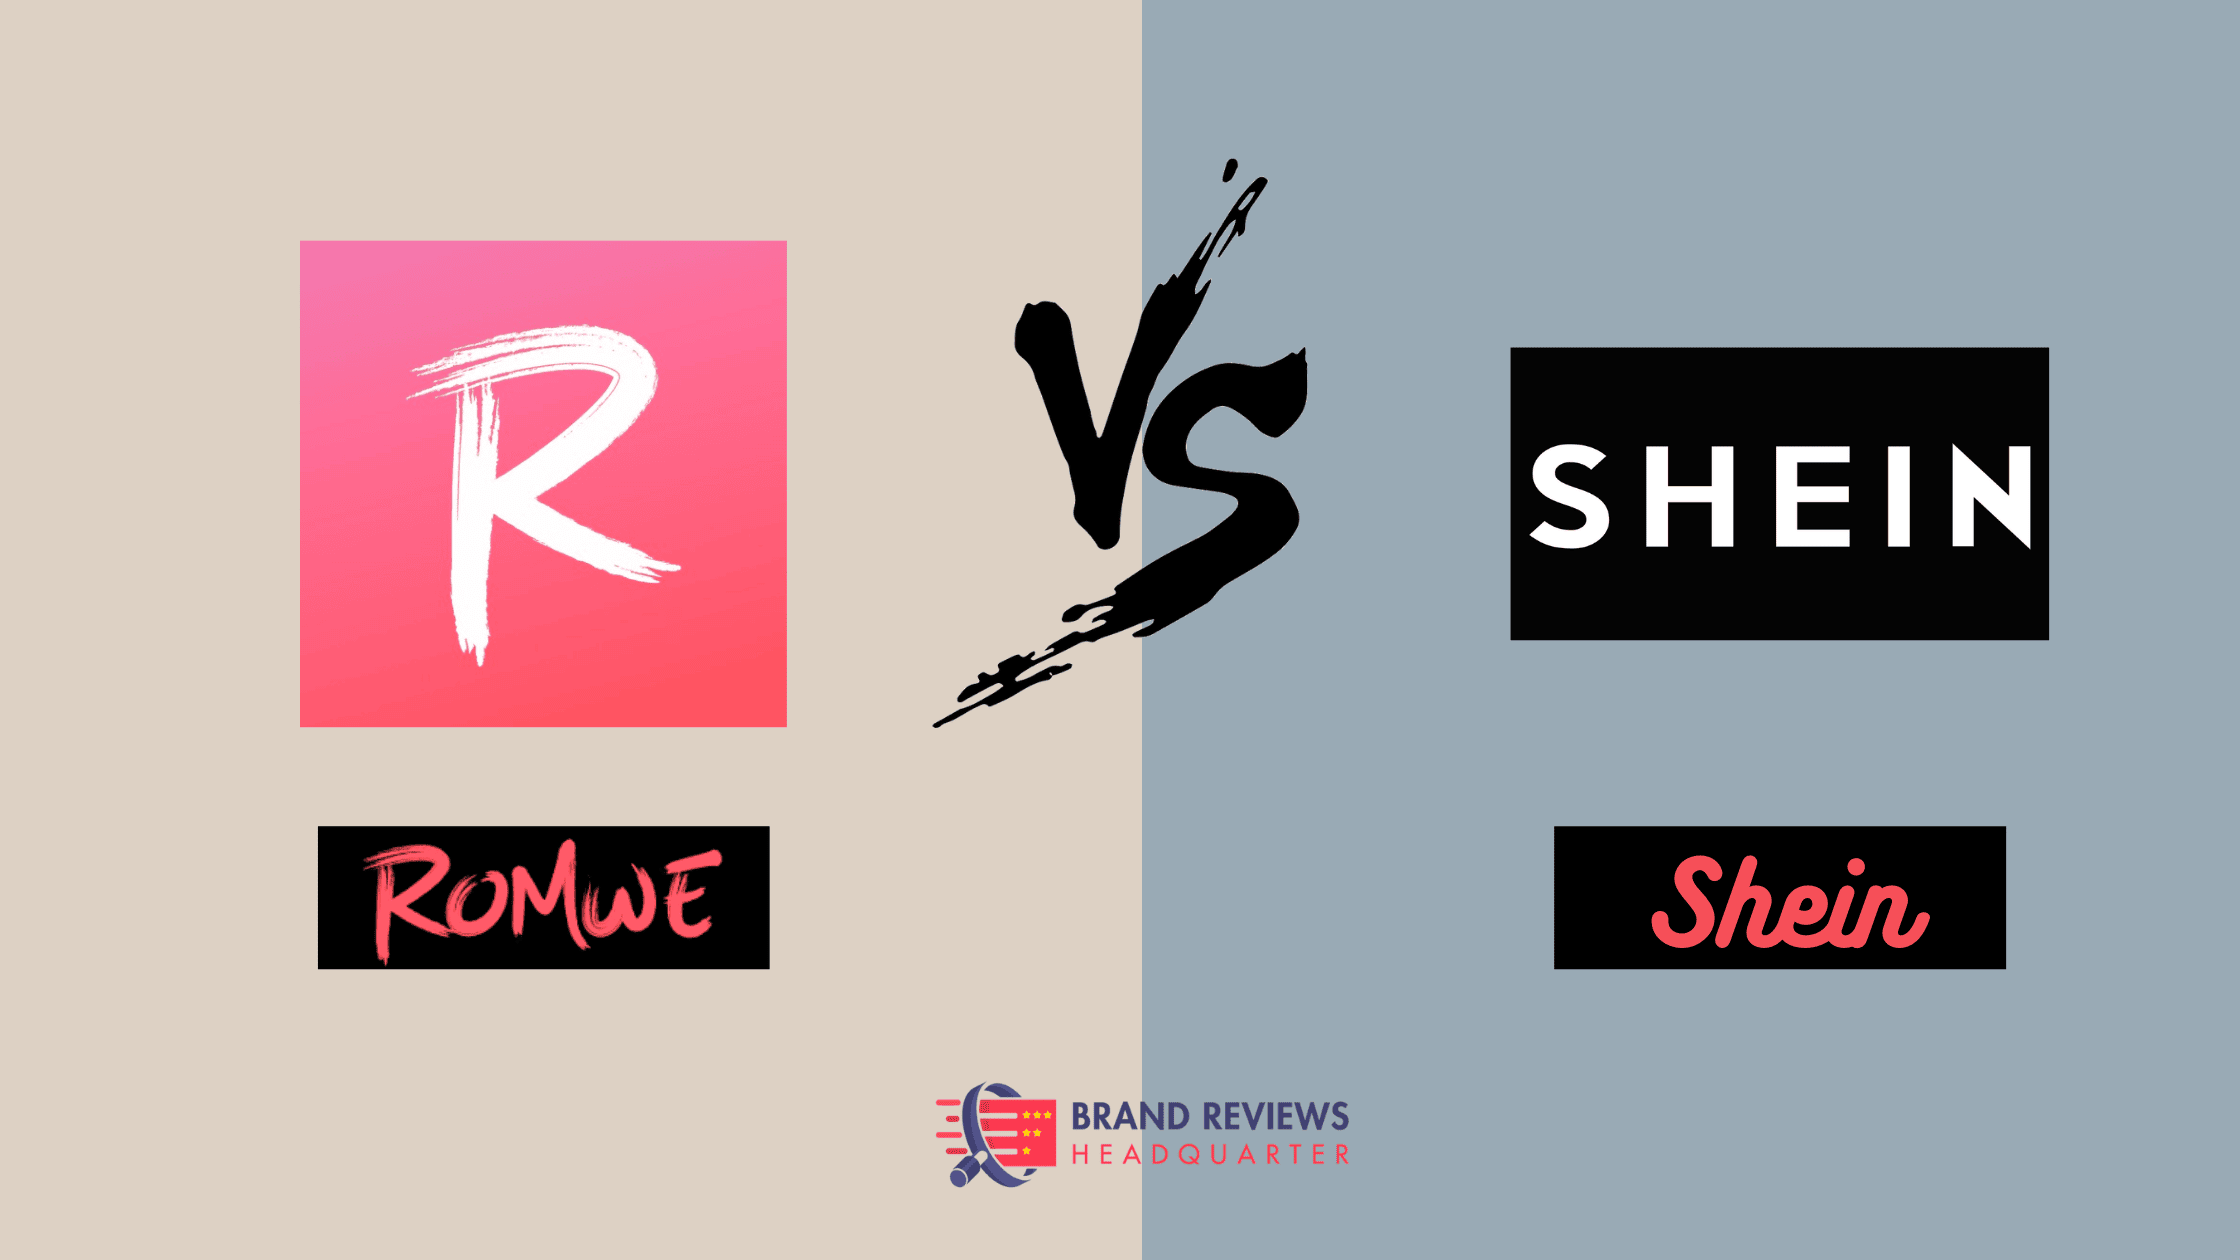 Romwe vs Shein